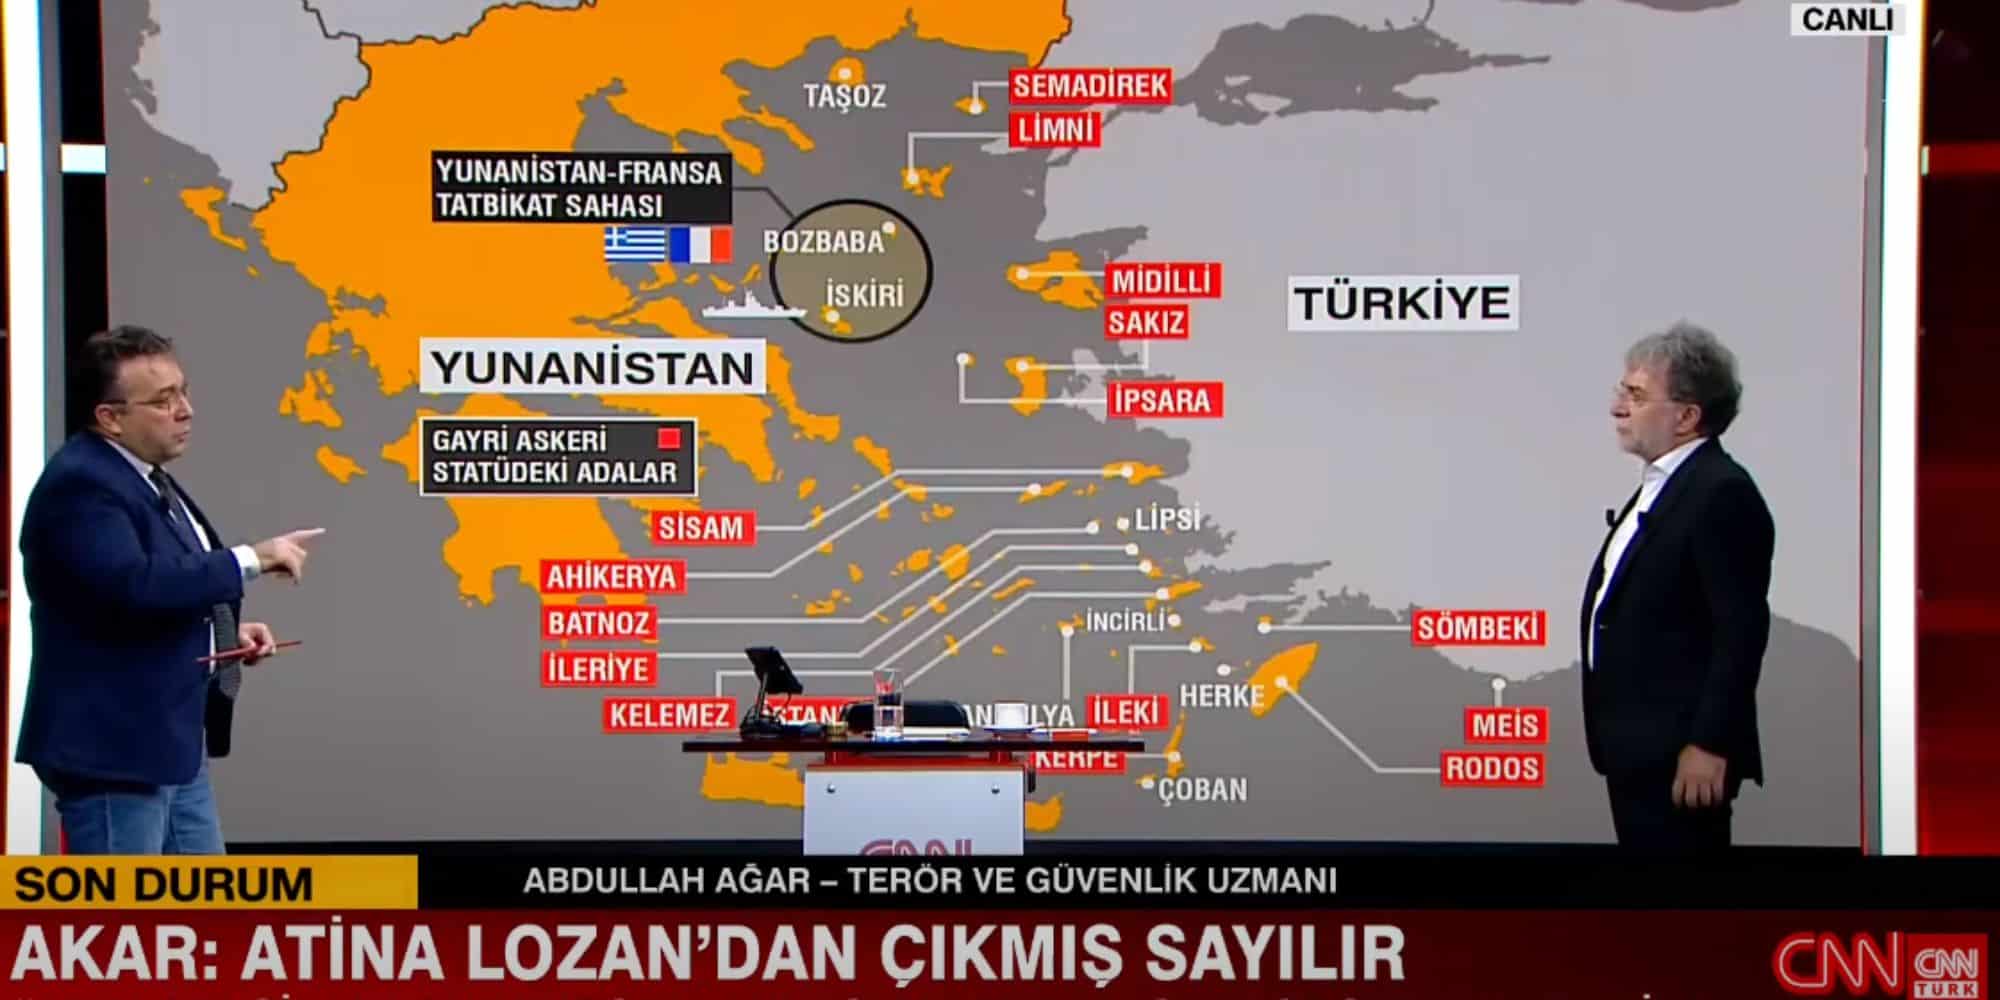 Ο χάρτης της Ελλάδας στο CNN Turk